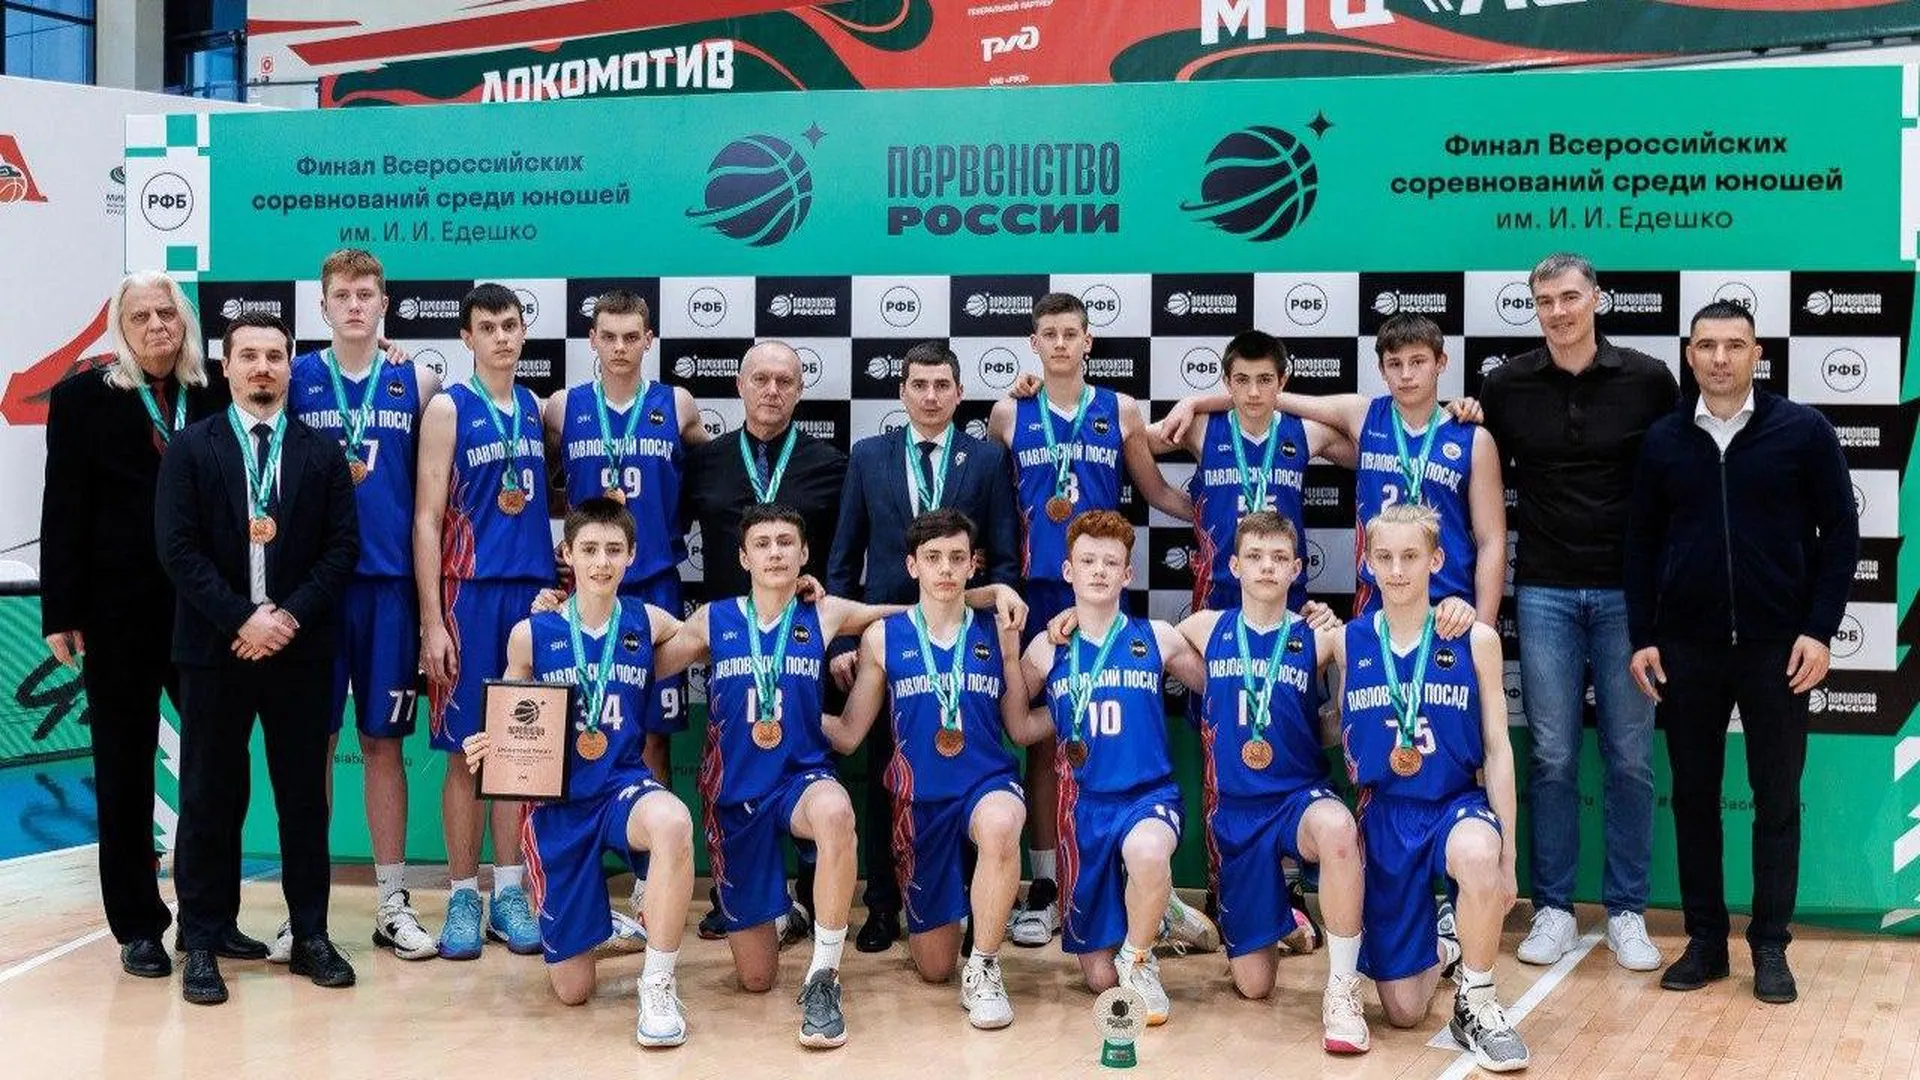 Подмосковные баскетболисты достойно выступили на Всероссийских соревнованиях среди юношей